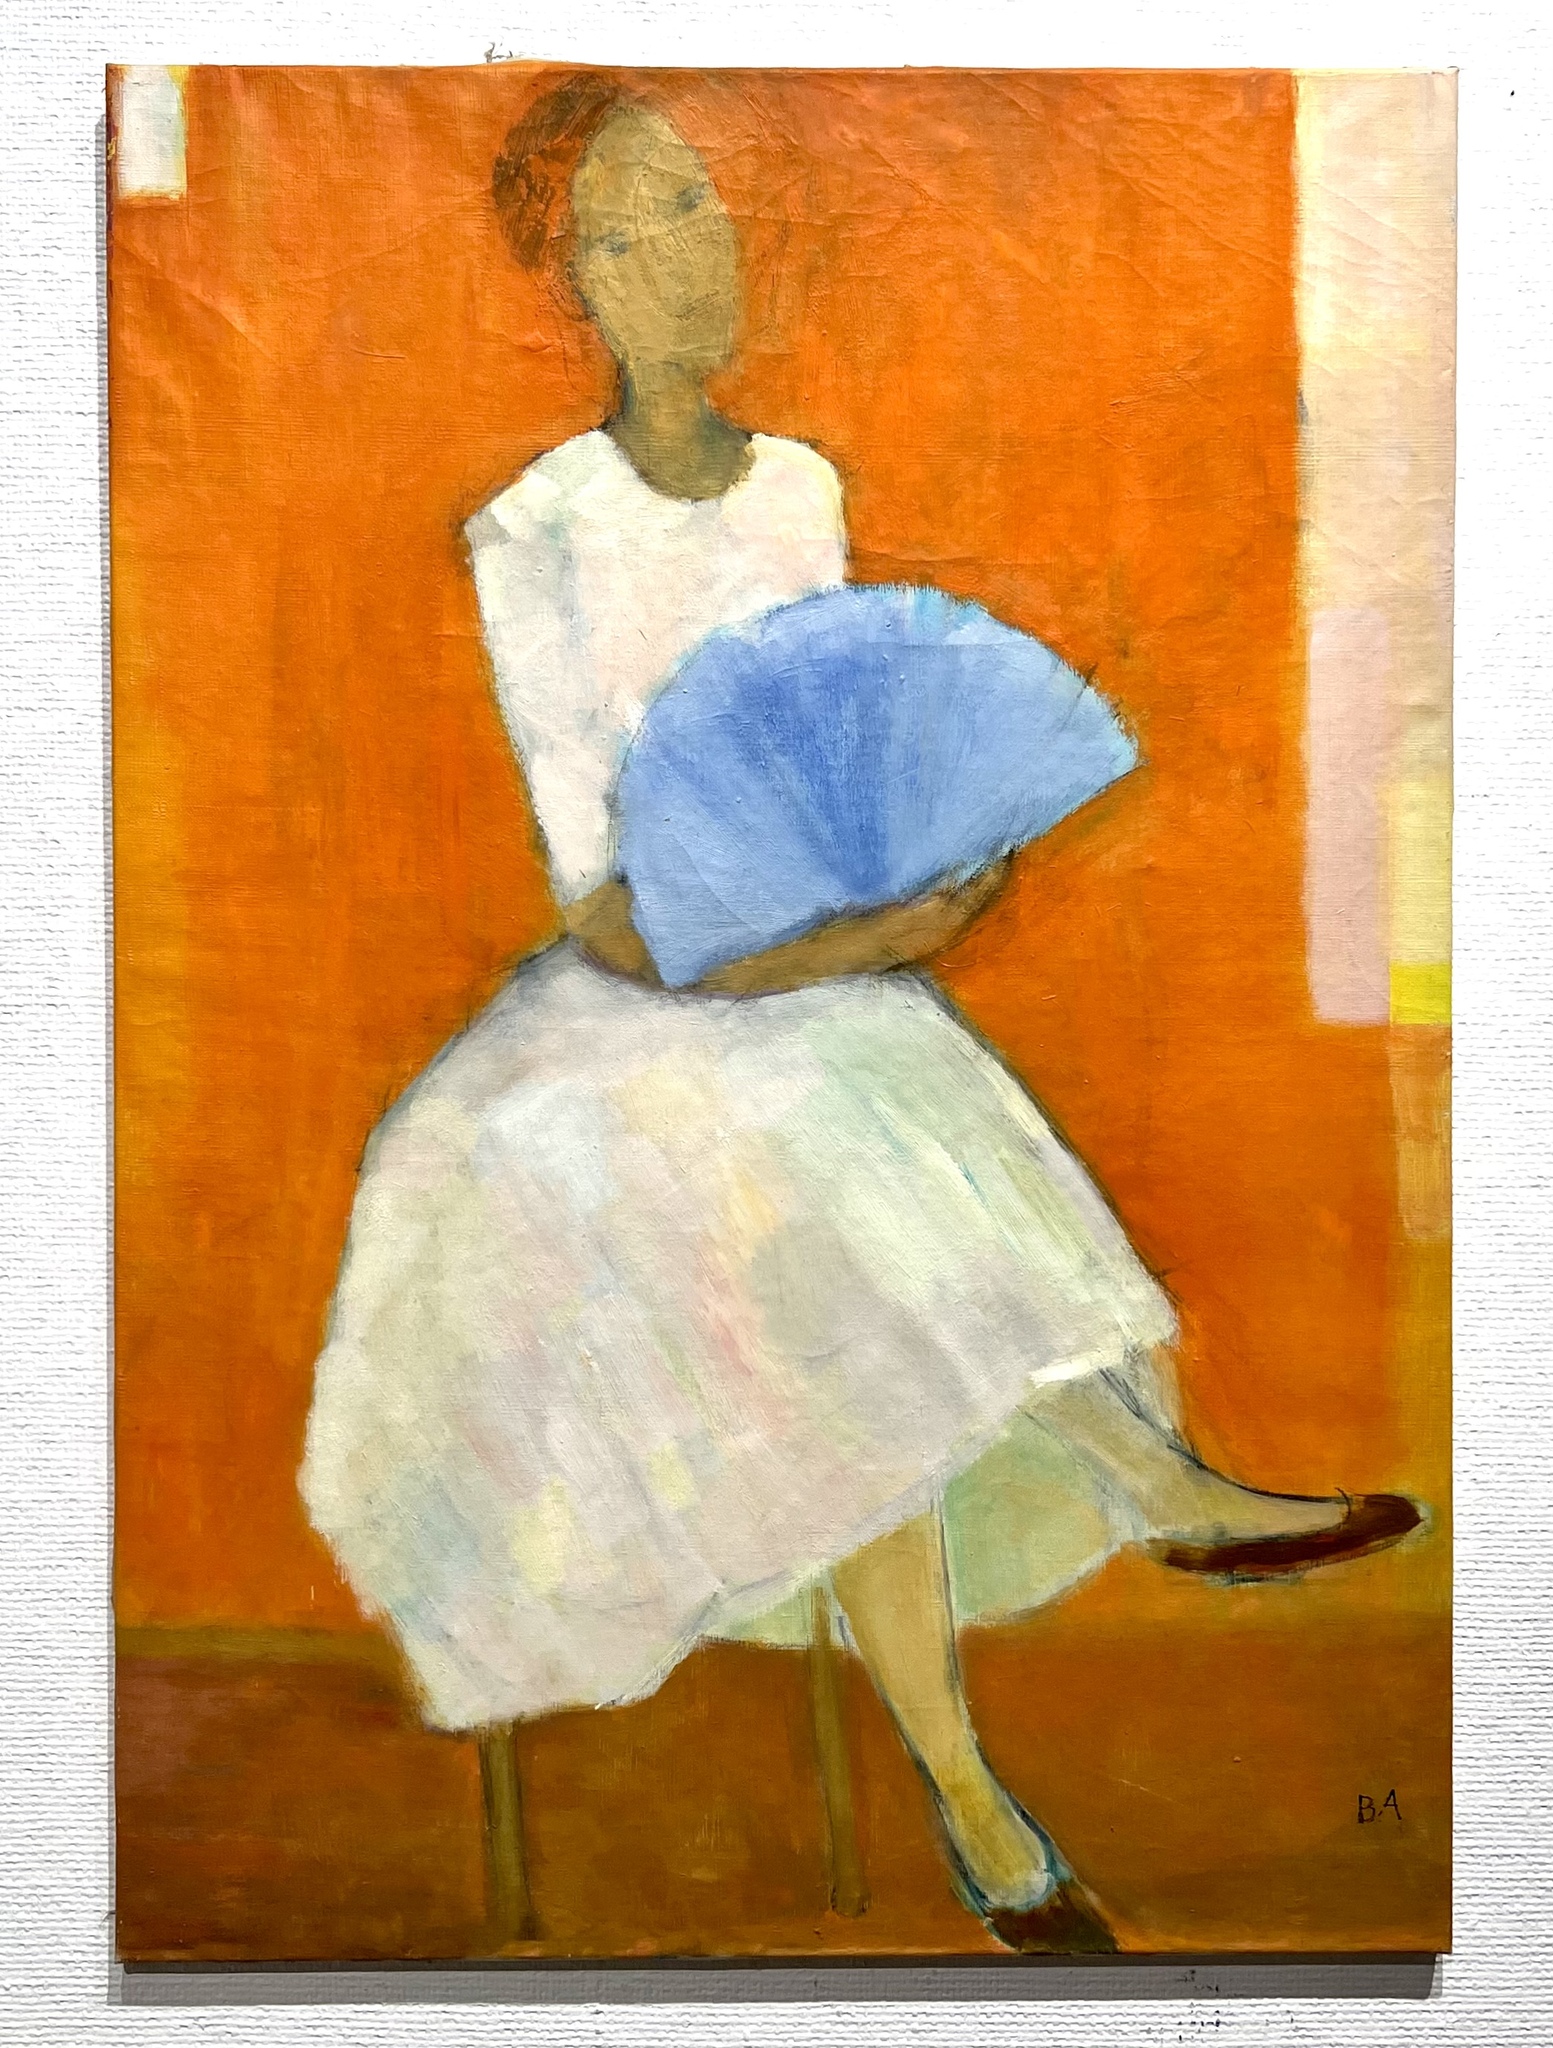 "Vilande ballerina", Olja på duk av Berthold Adolfsson. 59x84cm.